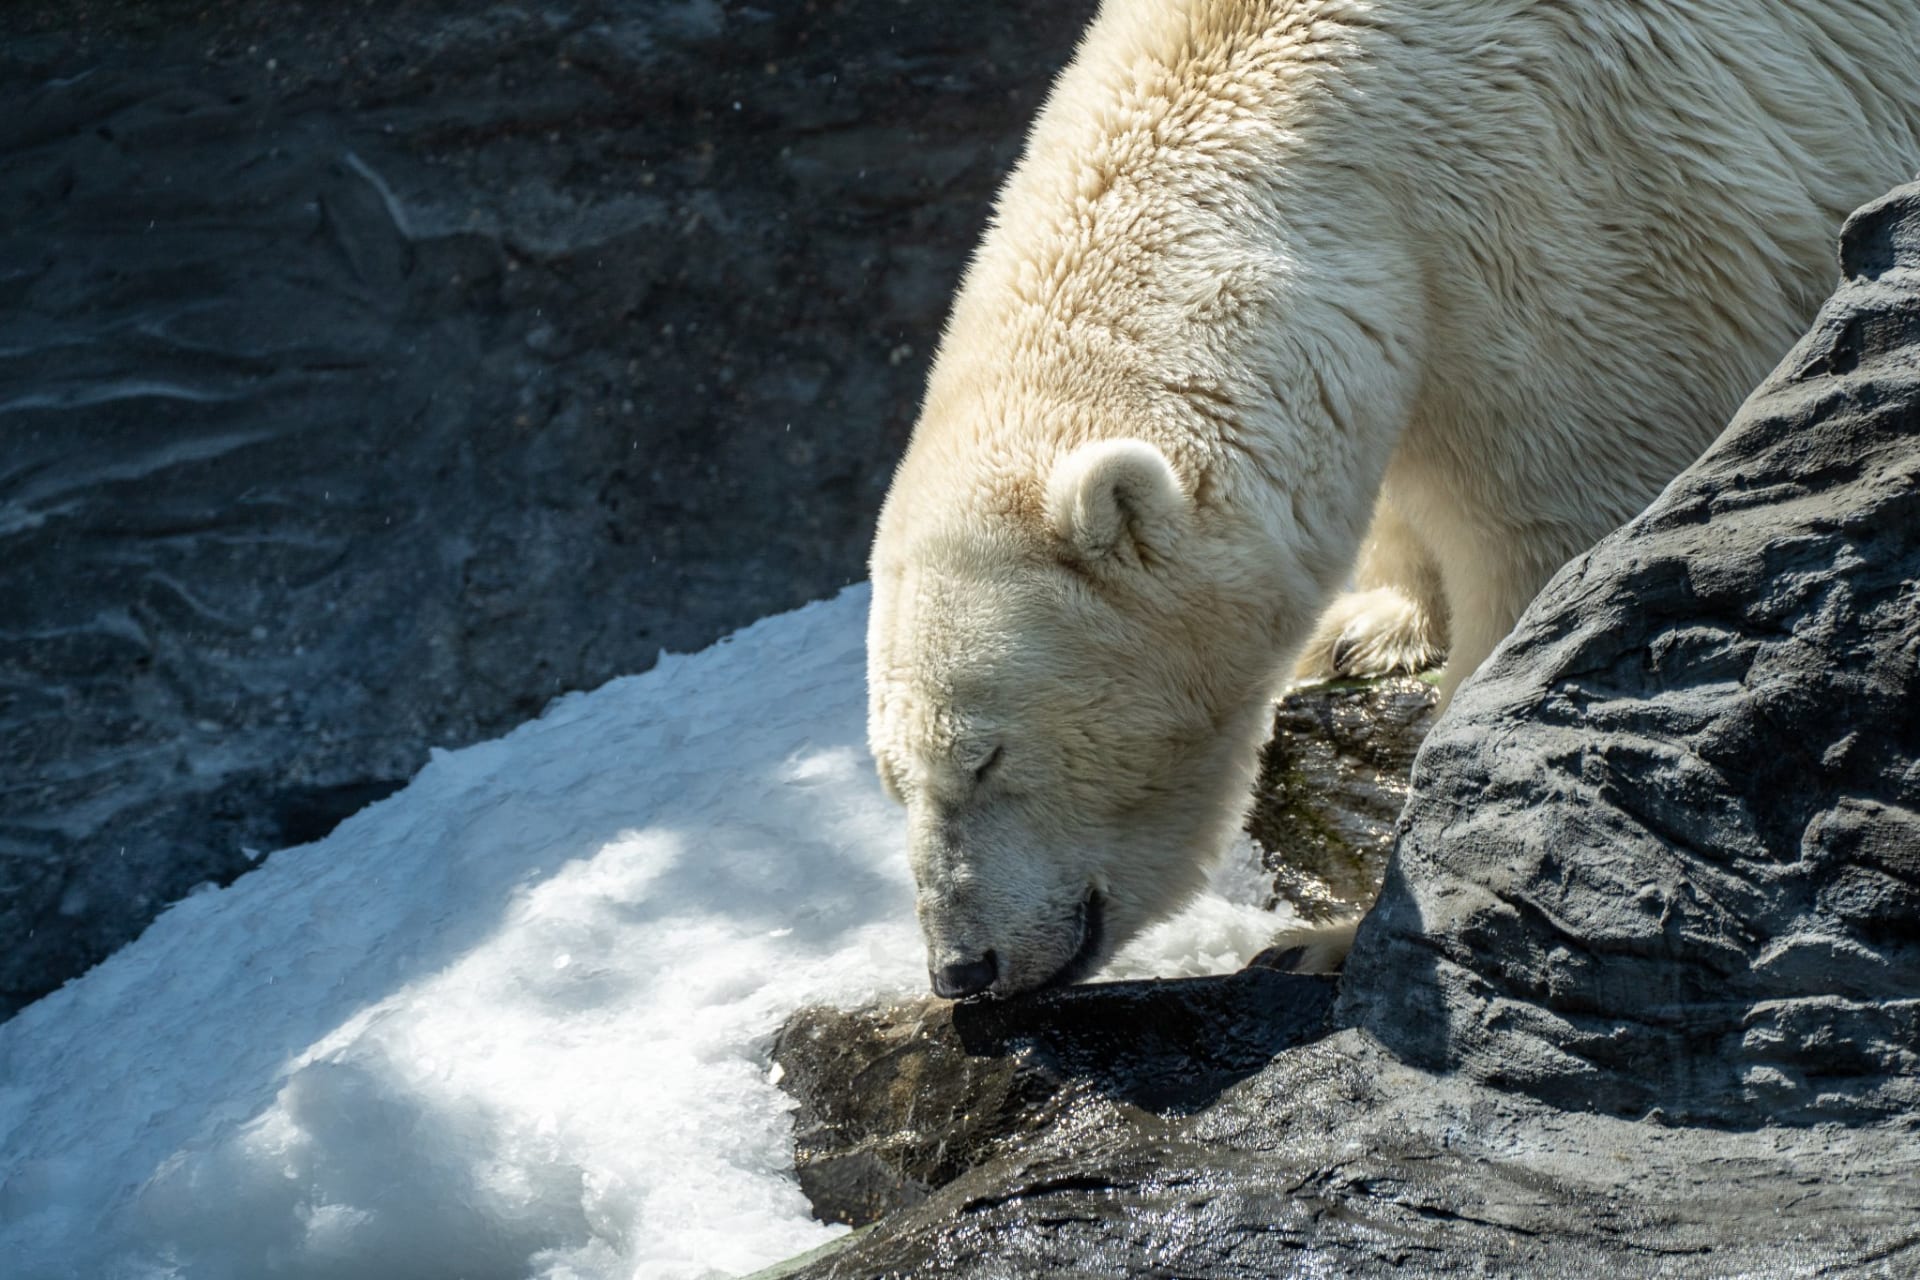 Samice medvěda ledního Berta si užívá sněhu z ledovače.